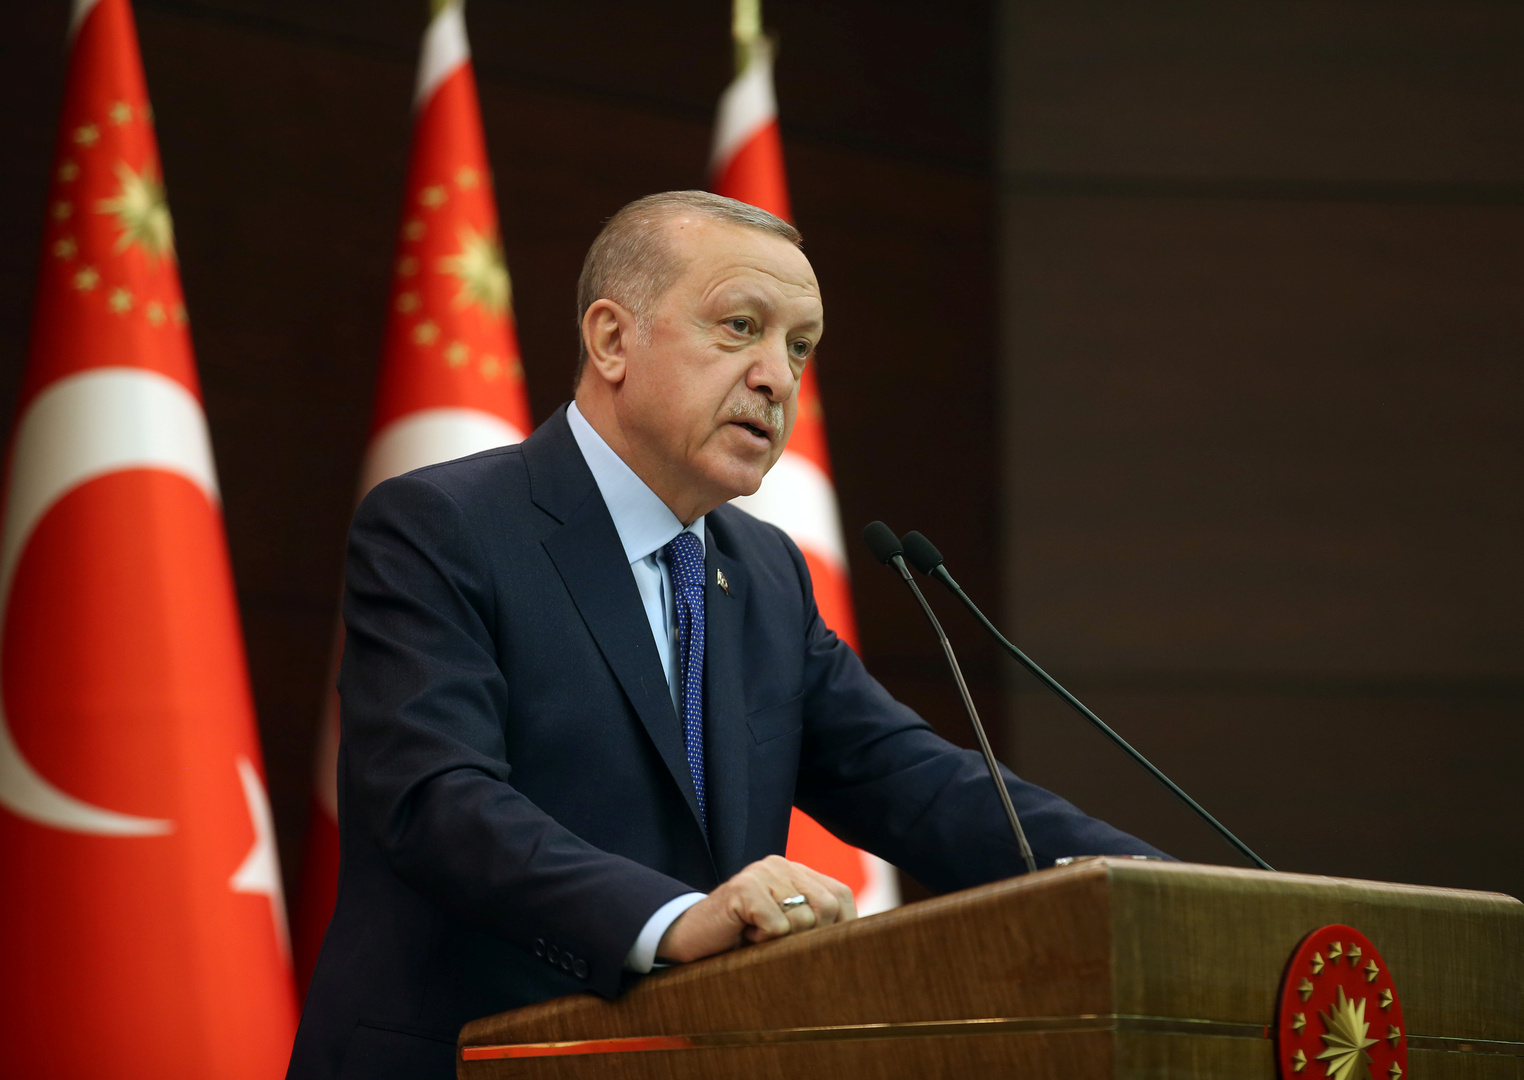 نيابة أنقرة ترفع قضية ضد صحيفة يونانية بسبب عنوان مسيء لأردوغان